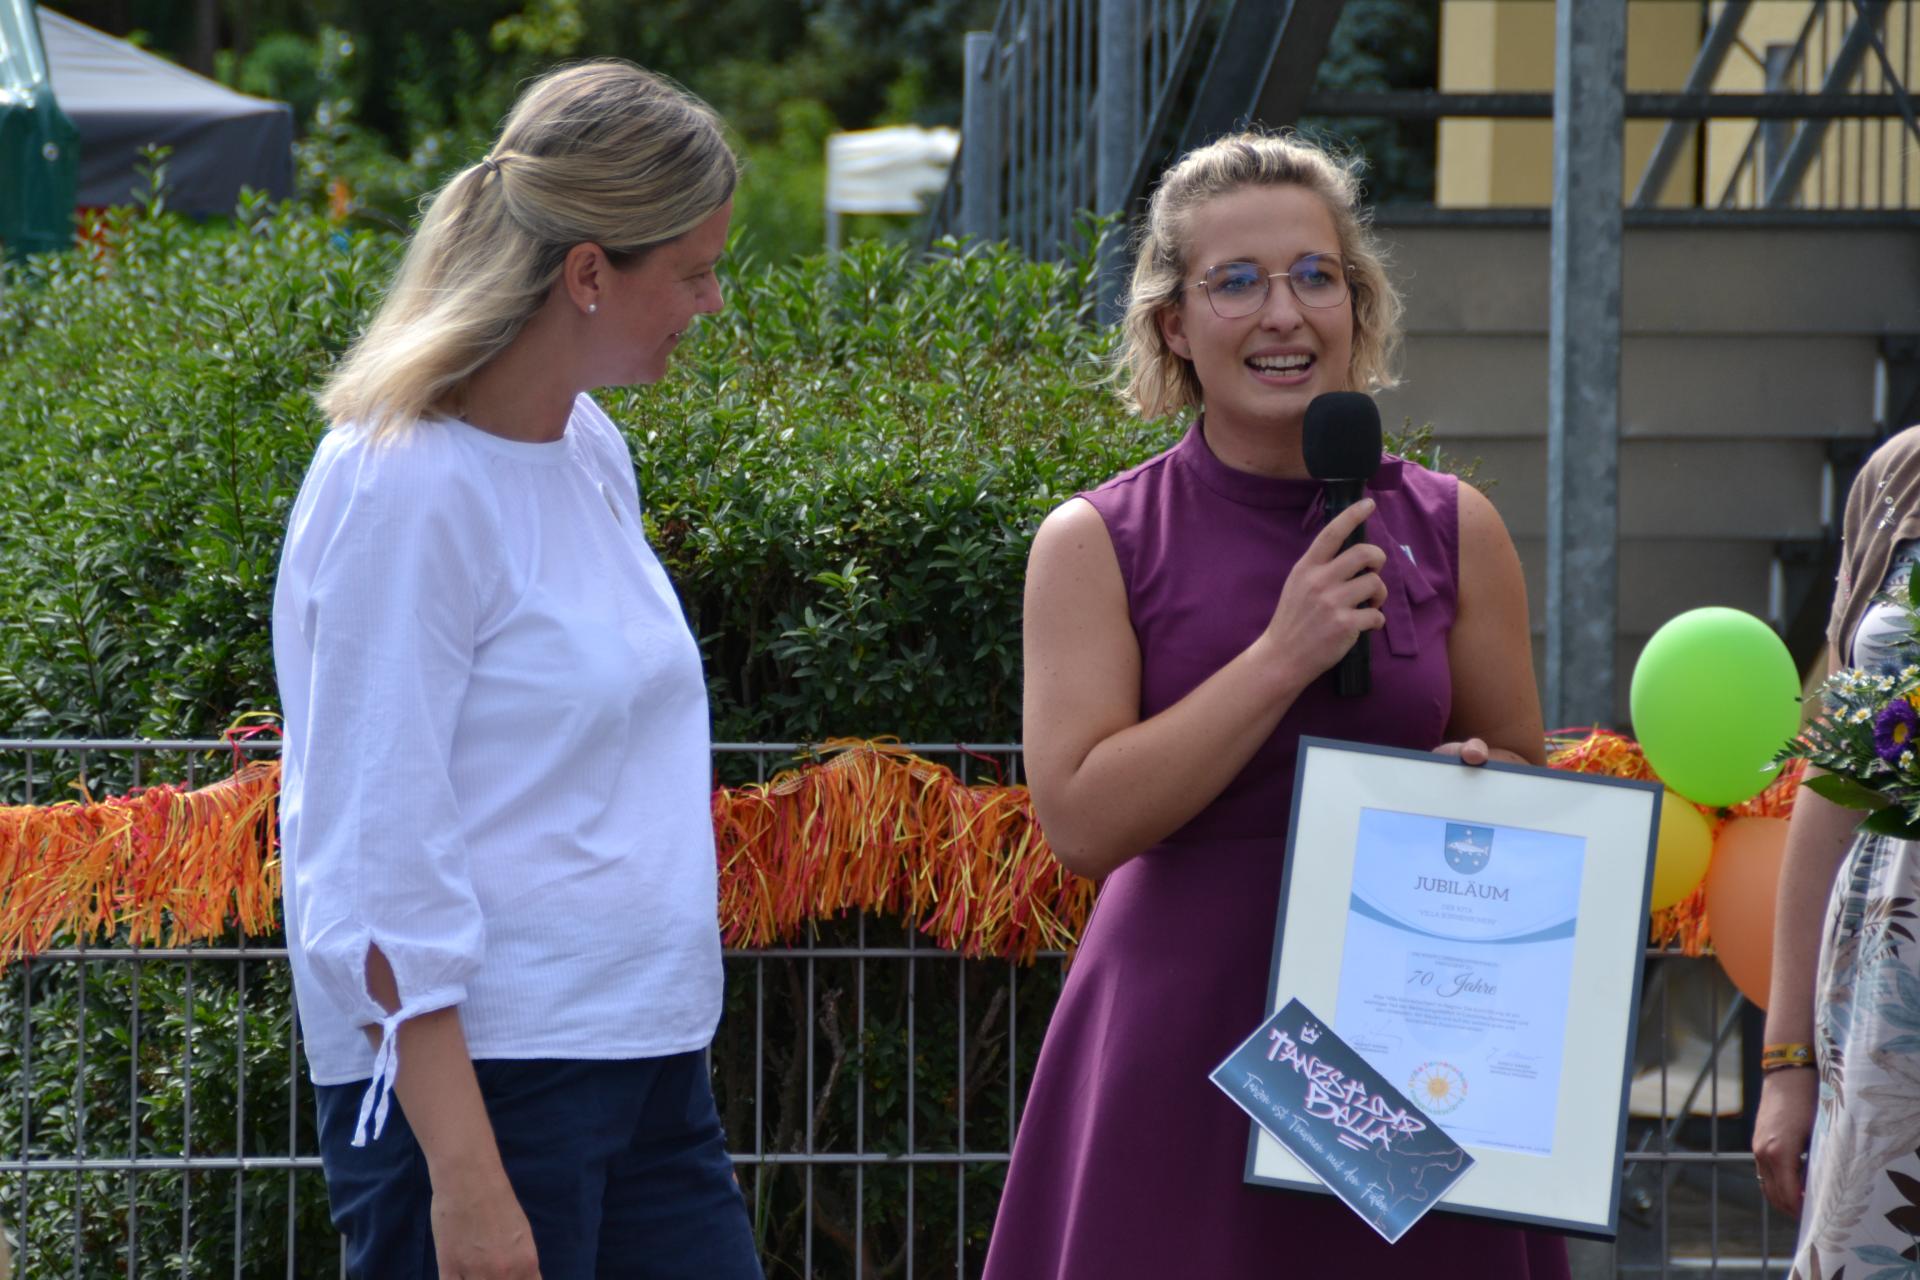 Fachbereichsleiterin Jessica Weiner (r.) gratuliert zum Jubiläum. Foto: Stadt Lübbenau/Spreewald